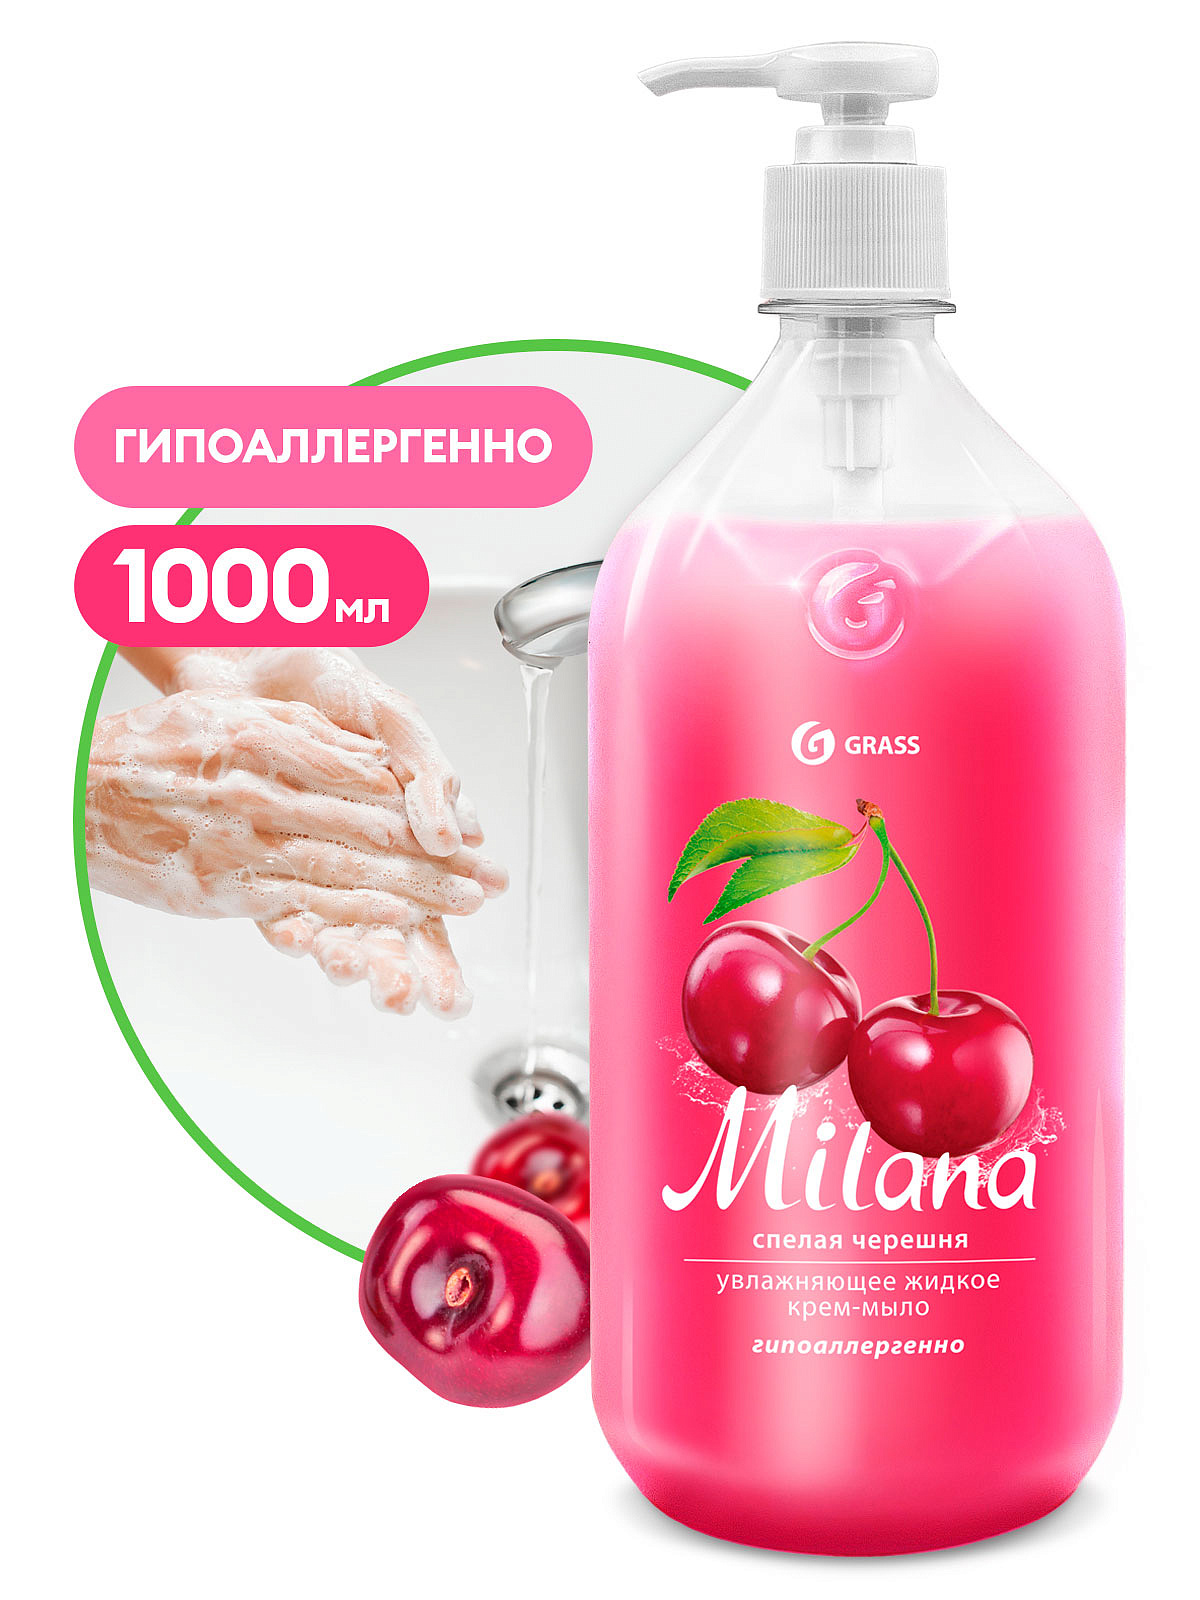 Жидкое крем-мыло Milana спелая черешня 1000 мл GraSS